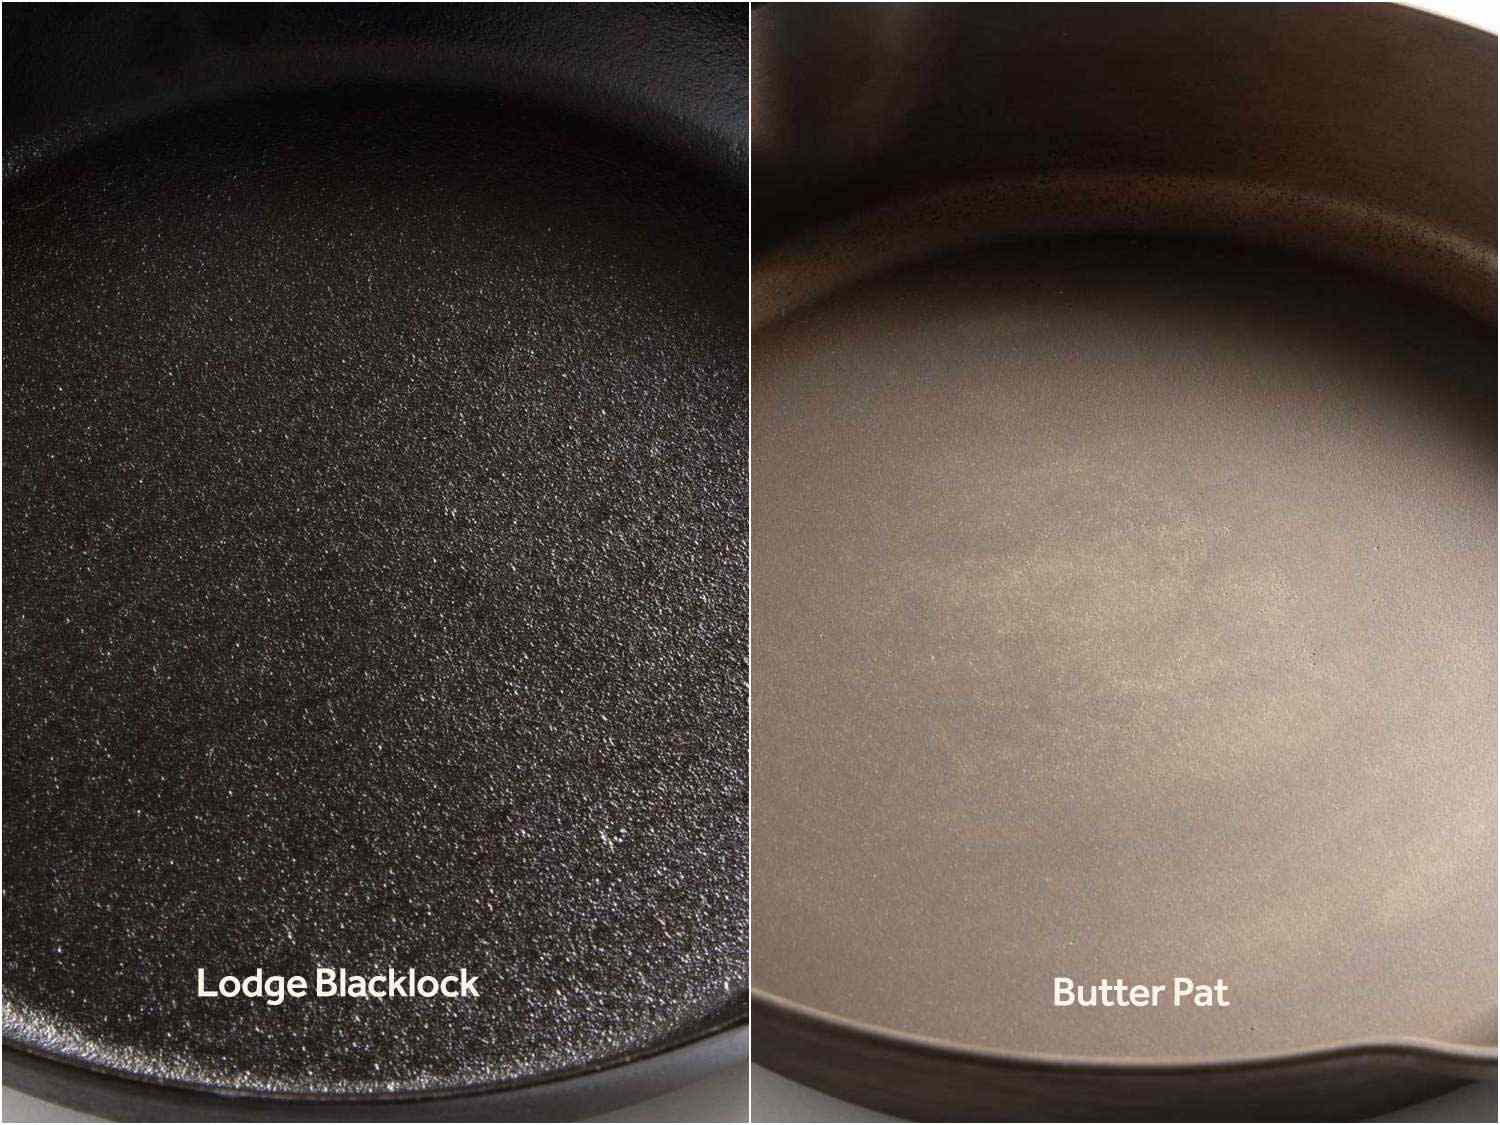 对比两种铸铁煎锅的表面，可以看出表面质地的不同(洛奇煎锅更粗糙，黄油煎锅更光滑)和调味程度的不同(洛奇煎锅的黑色更深，说明调味料更多，而黄油煎锅的棕色更多，说明调味料更少)。